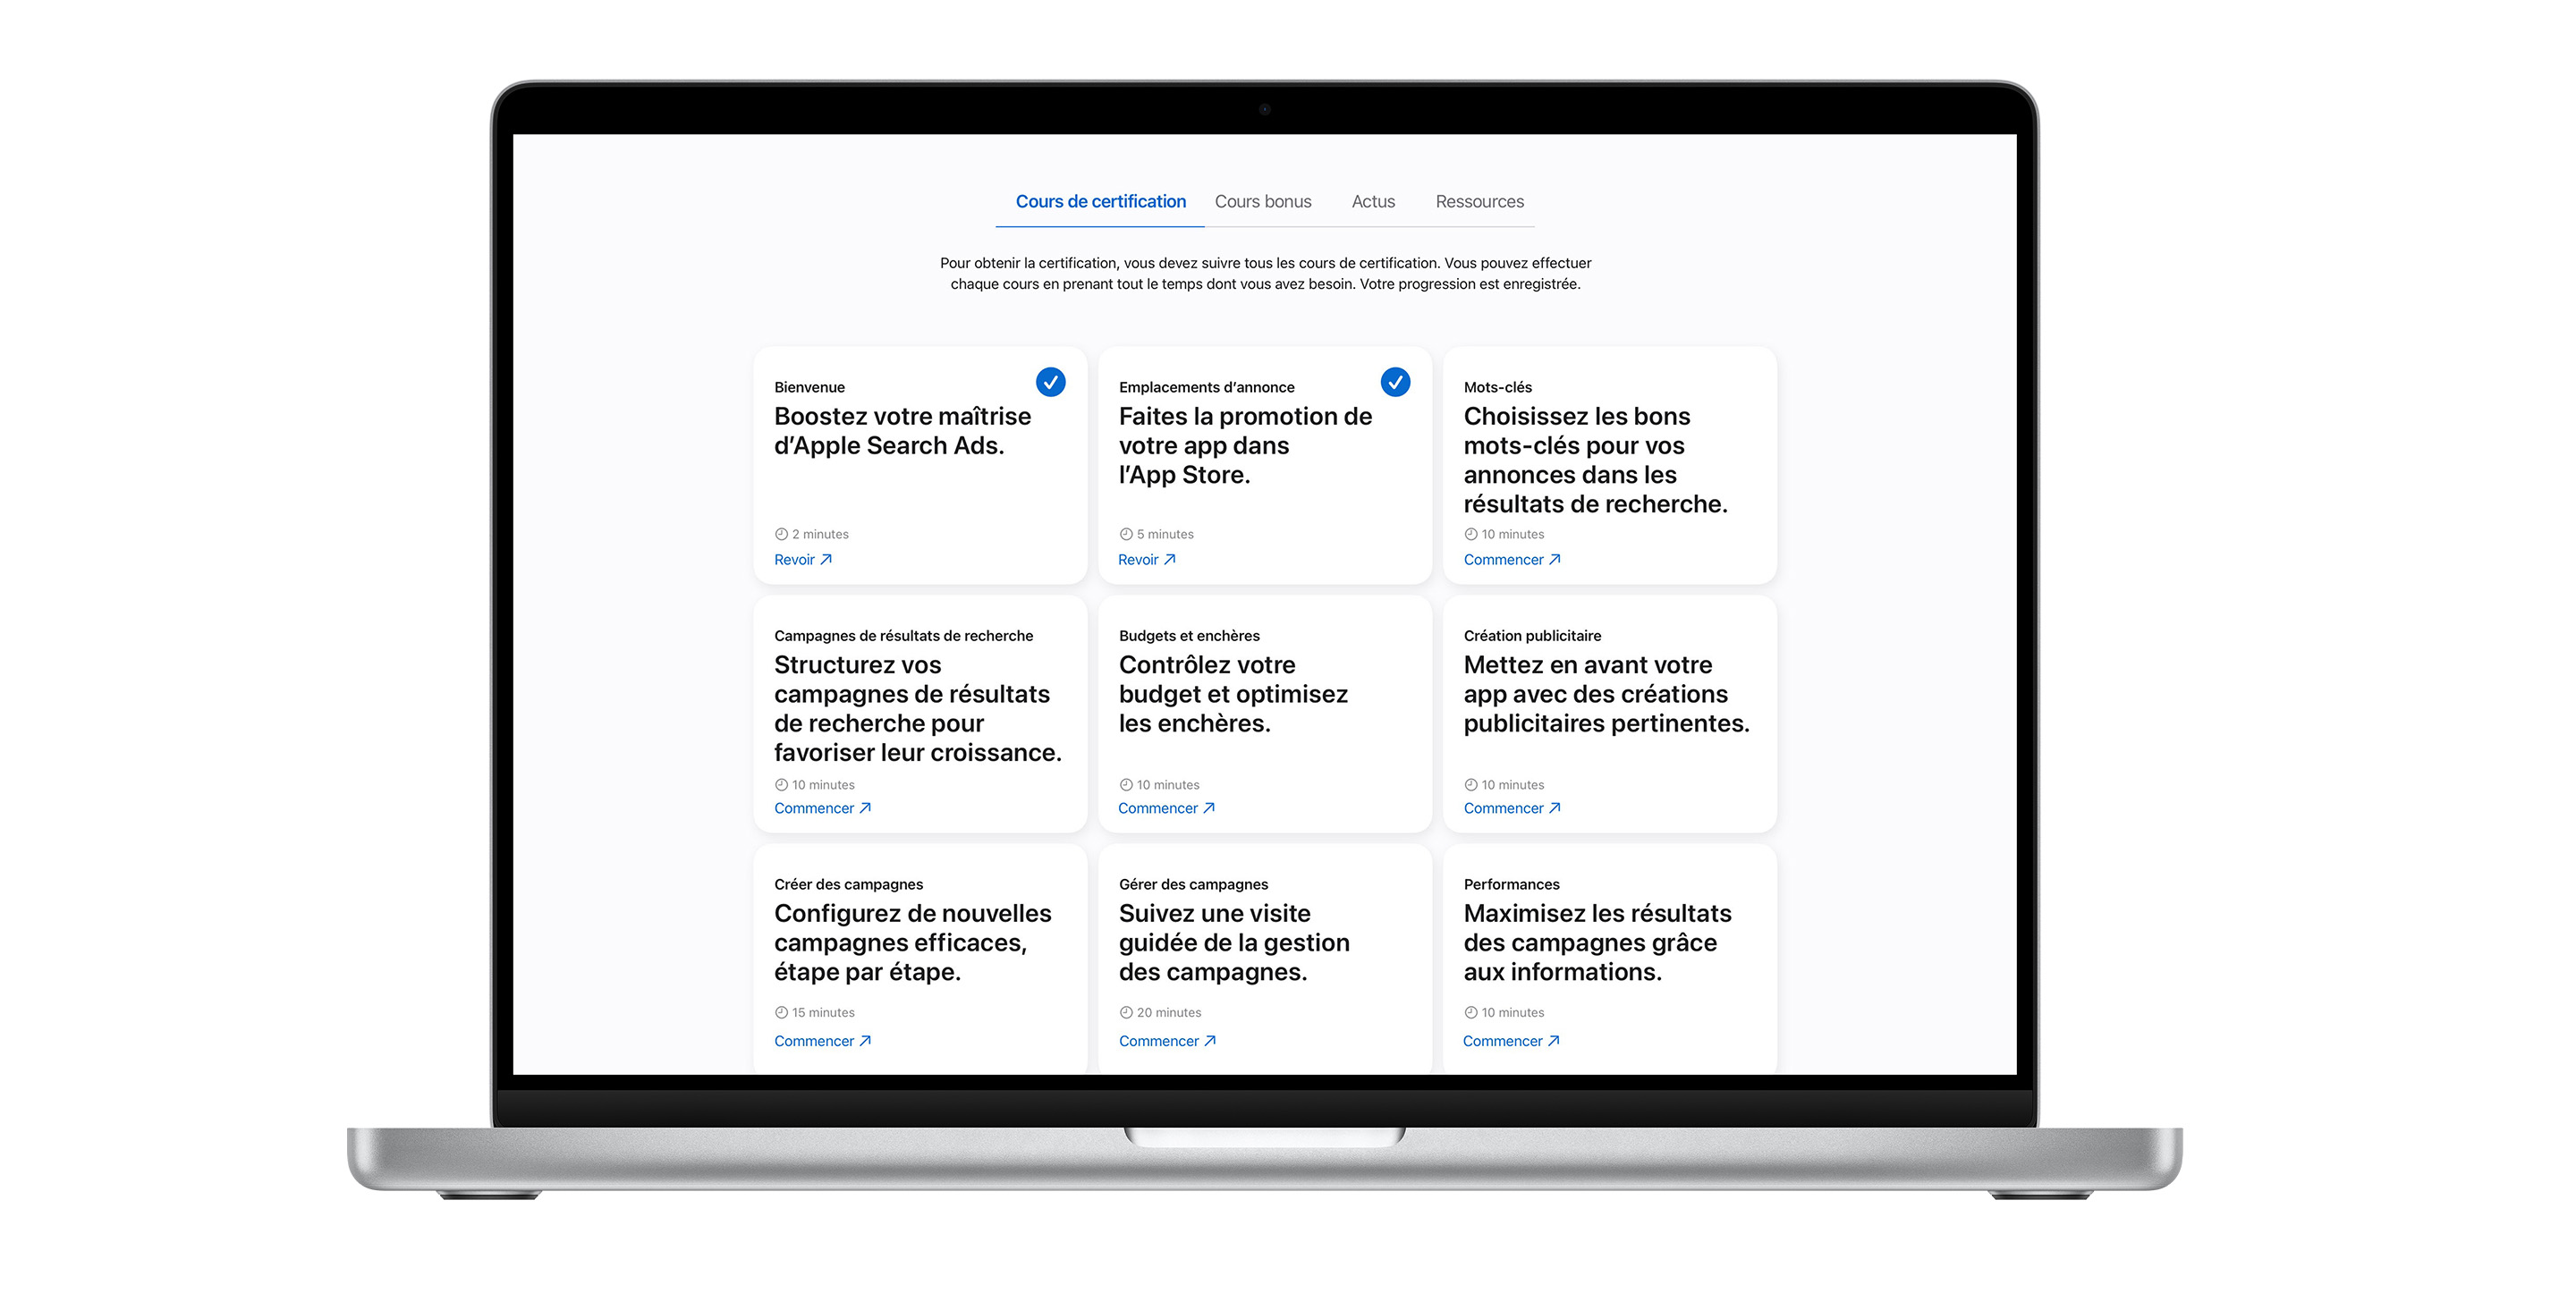 La page des cours de certification Apple Search Ads affichant neuf modules de cours. Les deux premiers cours sont cochés en bleu, indiquant qu’ils sont terminés.